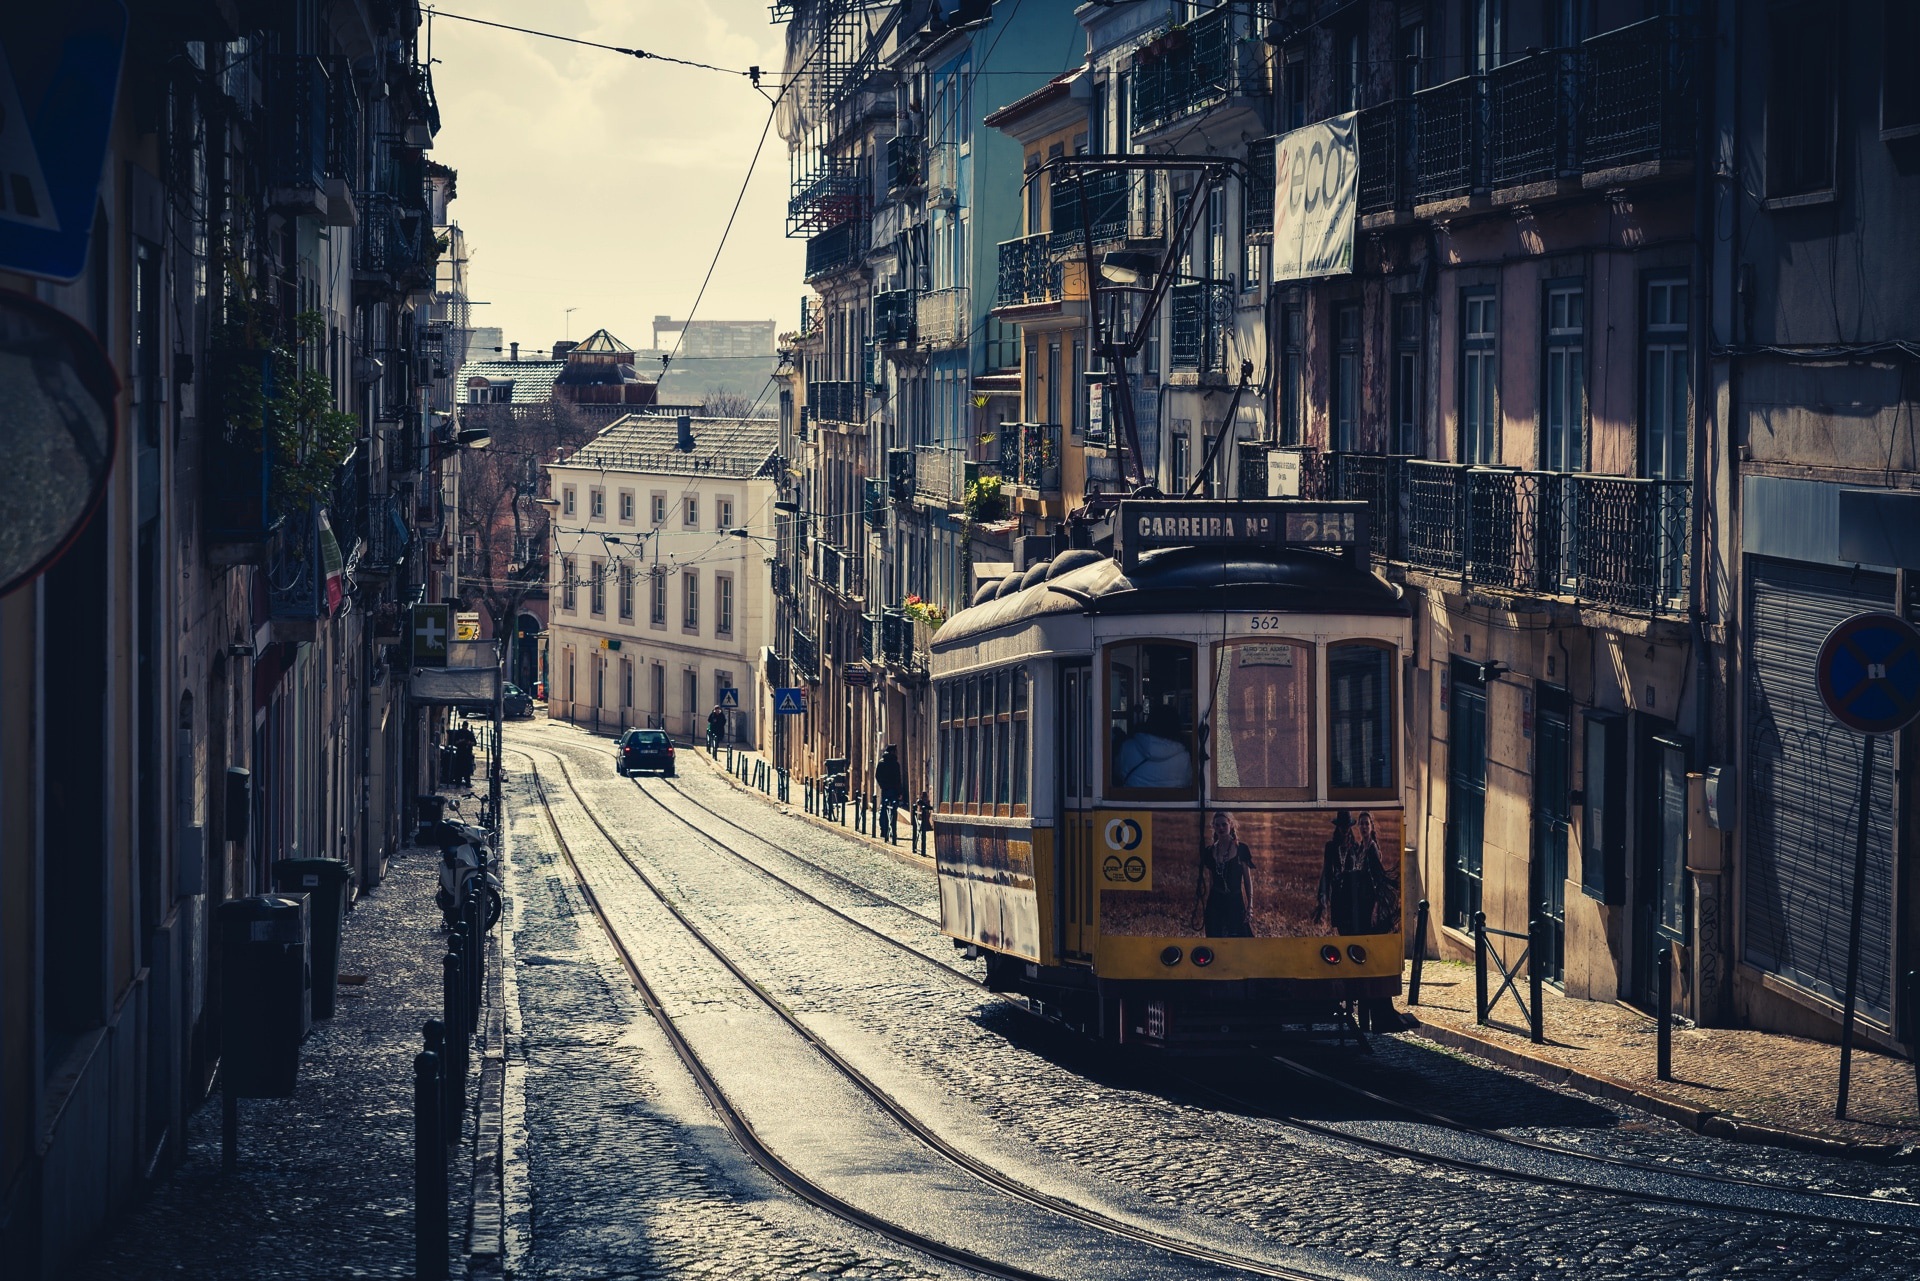 Поедешь в Лиссабон и не сфотаешь этот трамвай — домой не пустят